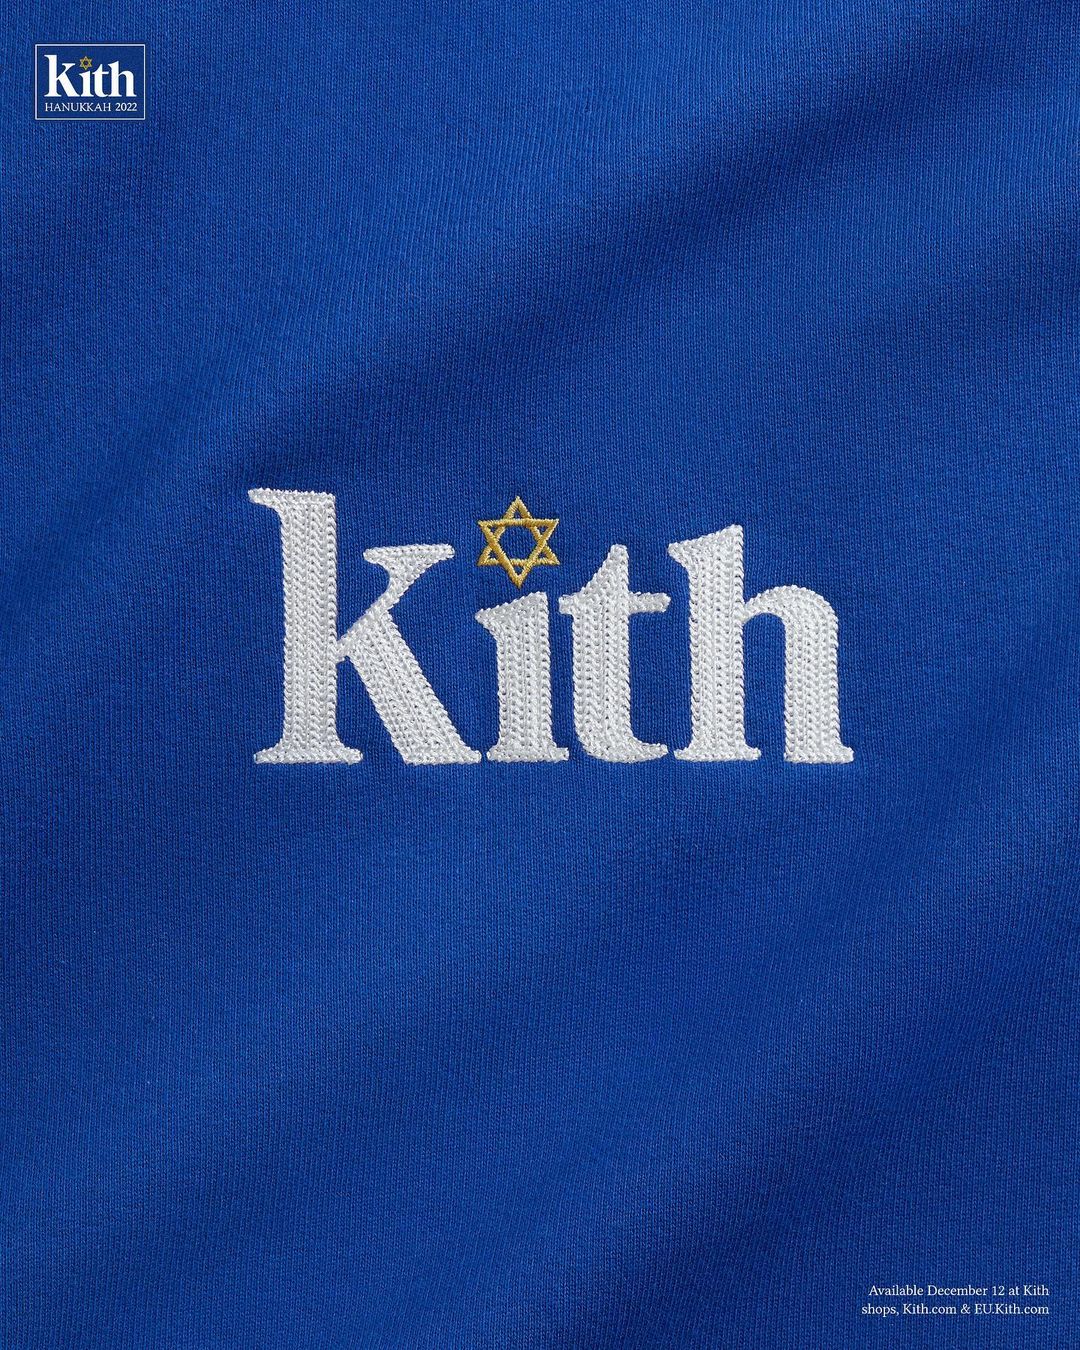 【12/12 発売】KITH “Hanukkah” Capsule (キス “ハヌカー” カプセル)